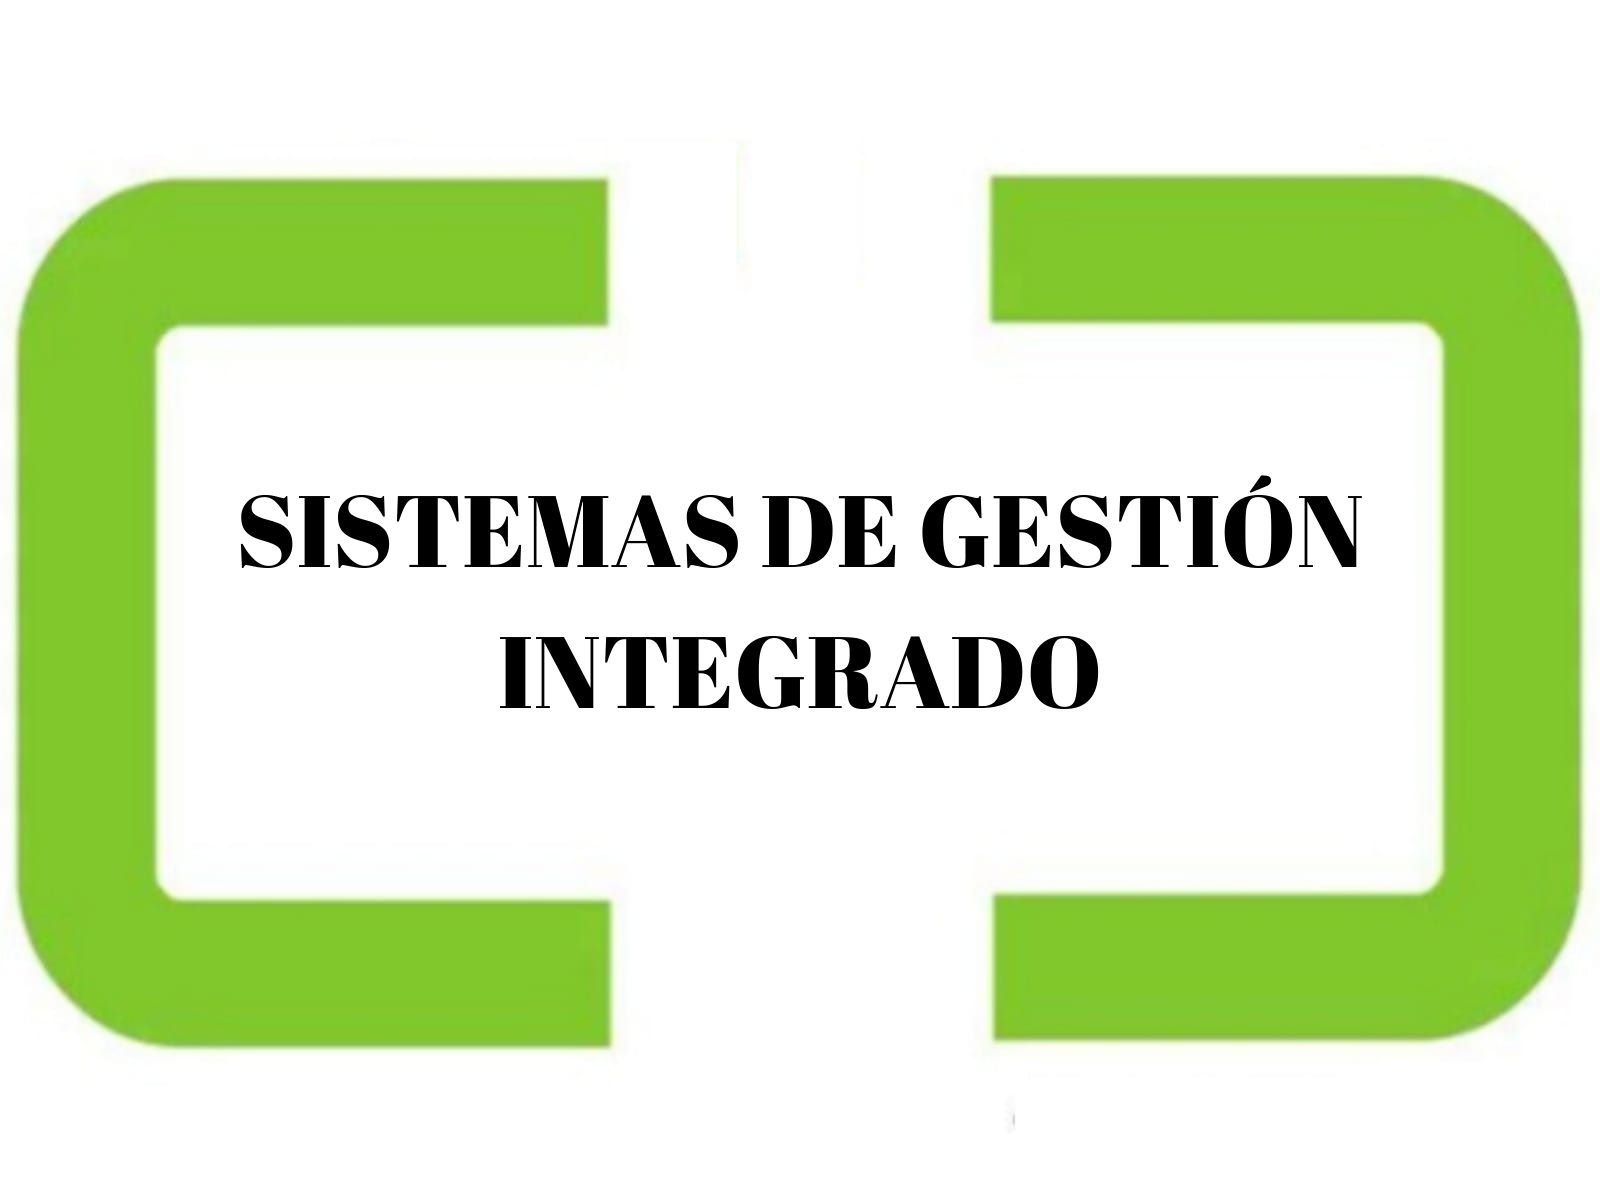 SISTEMAS DE GESTIÓN INTEGRADO